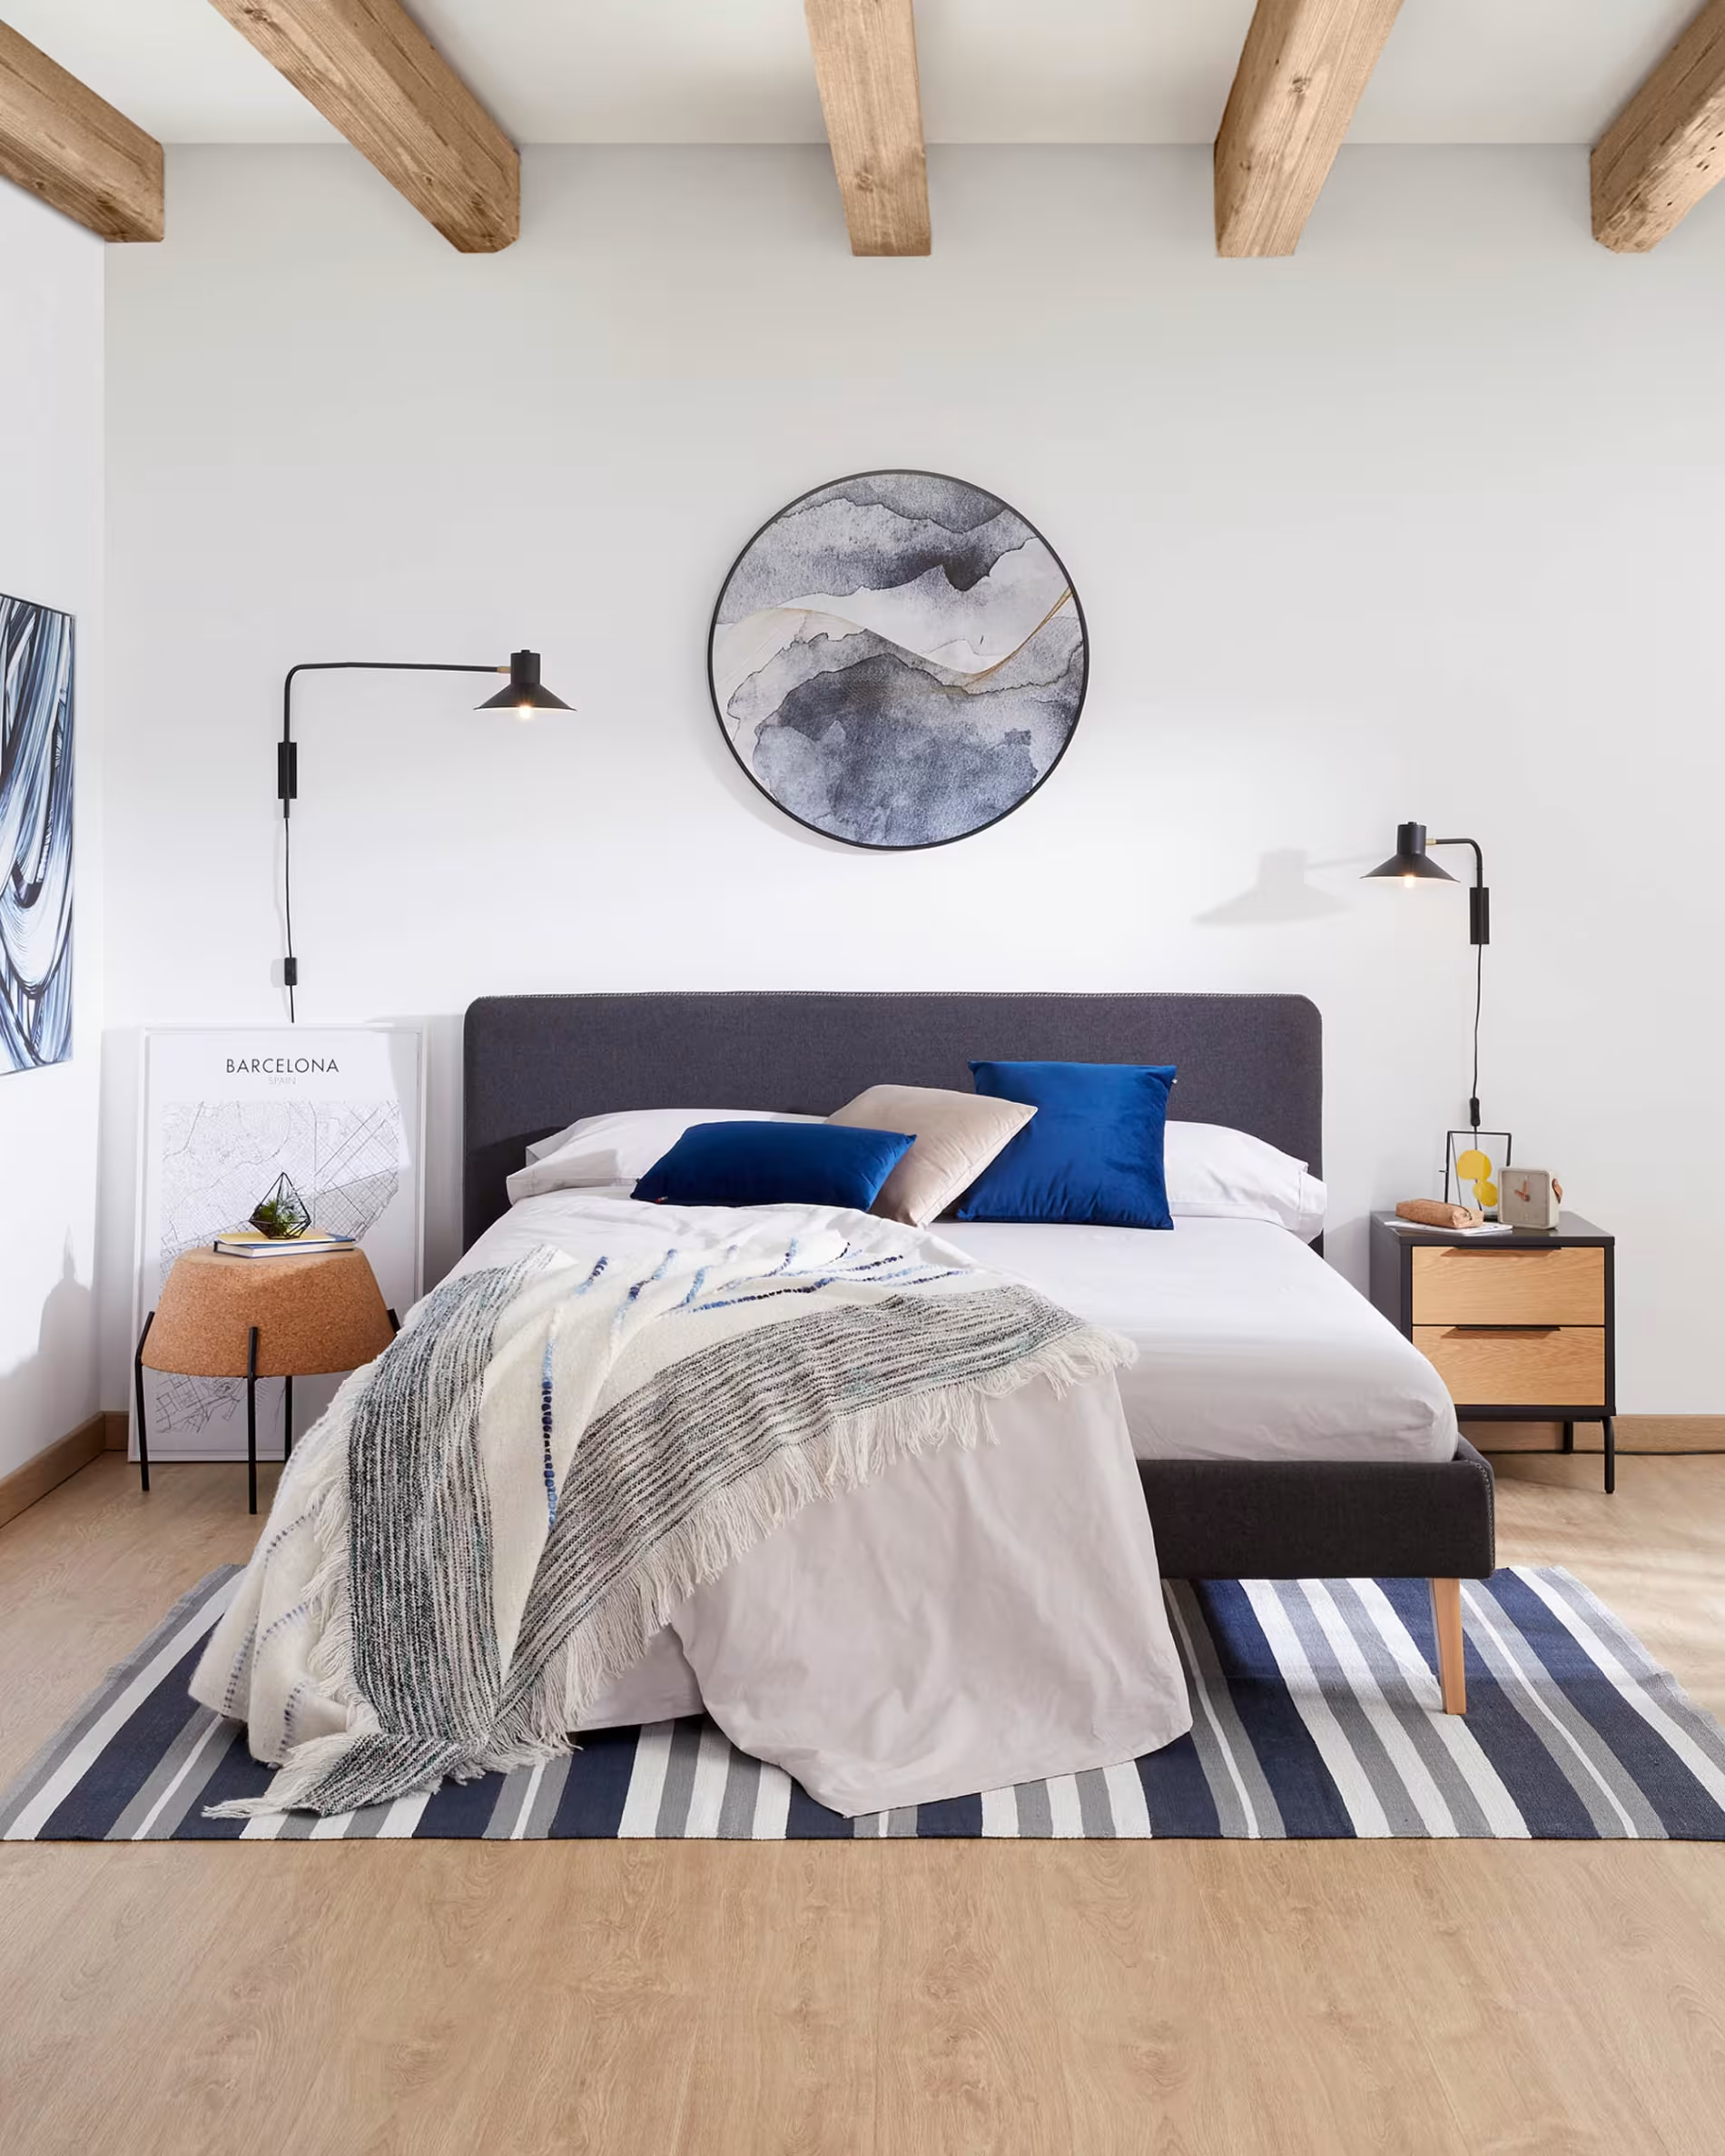 Cuadro redondo con pinturas en celeste y azul abstracto en habitación decorada de blanco, azul marino y gris con cama doble y techo con vigas a la vista. 